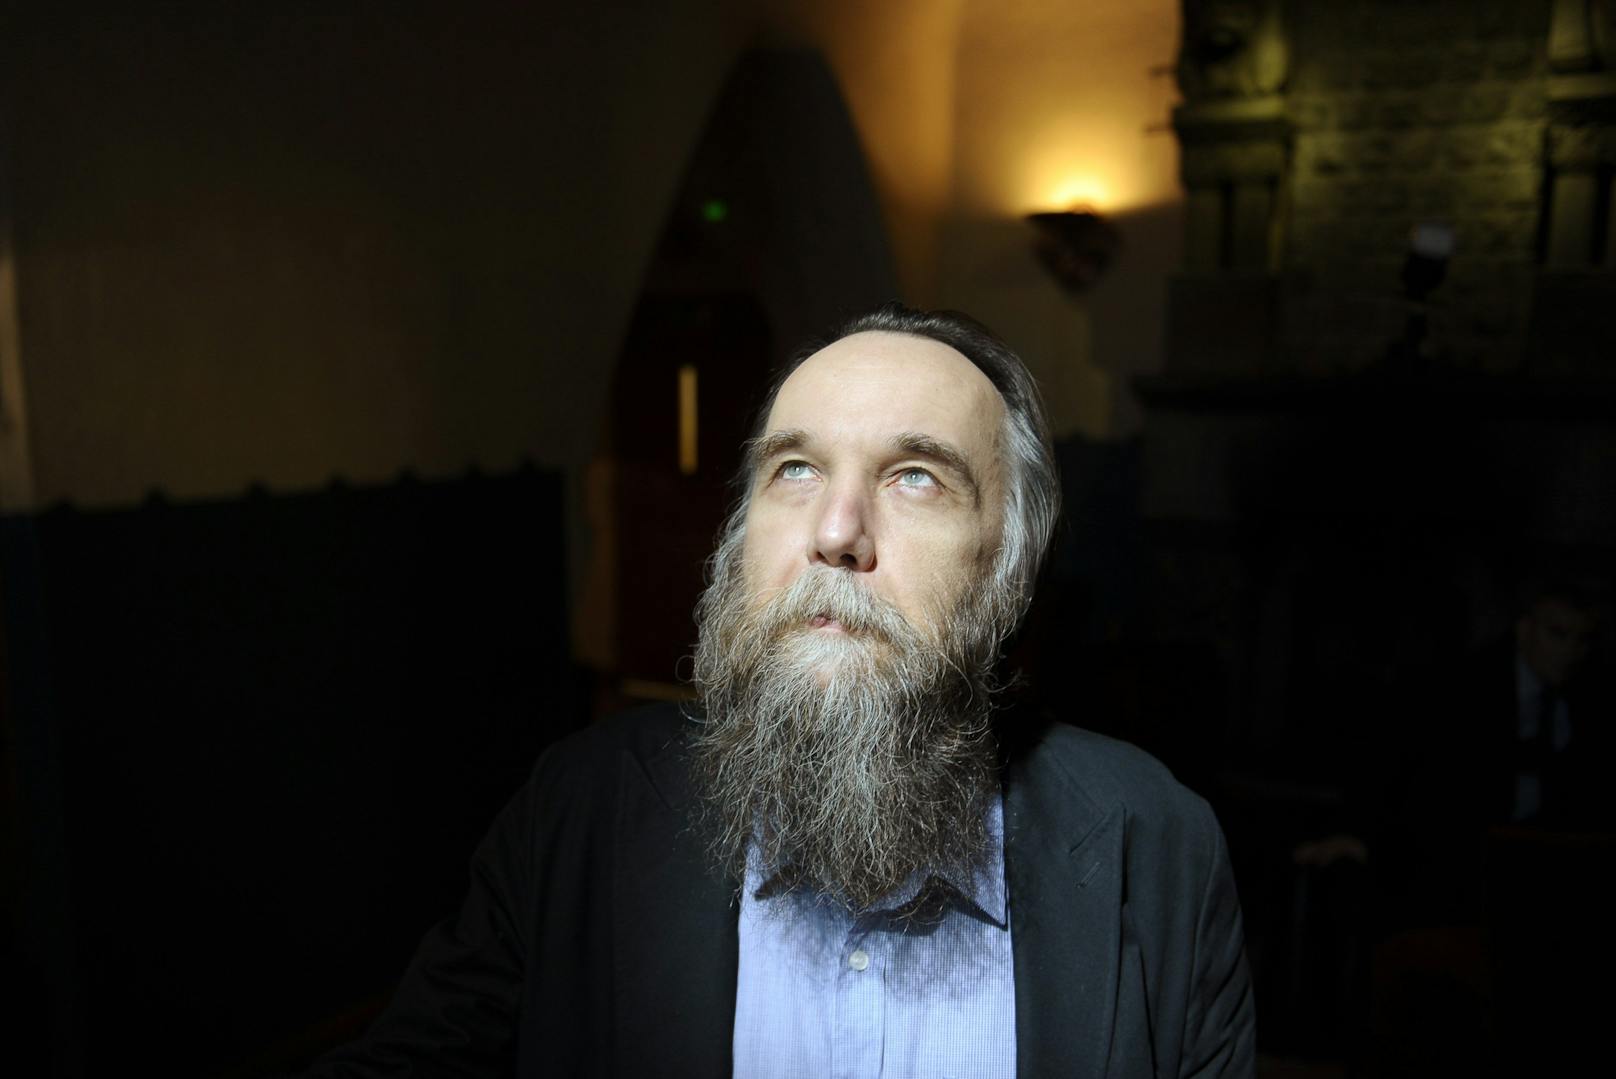 Rückenstärkung erhält Putin von Alexander Dugin. Der 60-Jährige gilt als Vordenker der Neuen Rechten, war Co-Vorsitzender der inzwischen verbotenen national-bolschewistischen Partei.